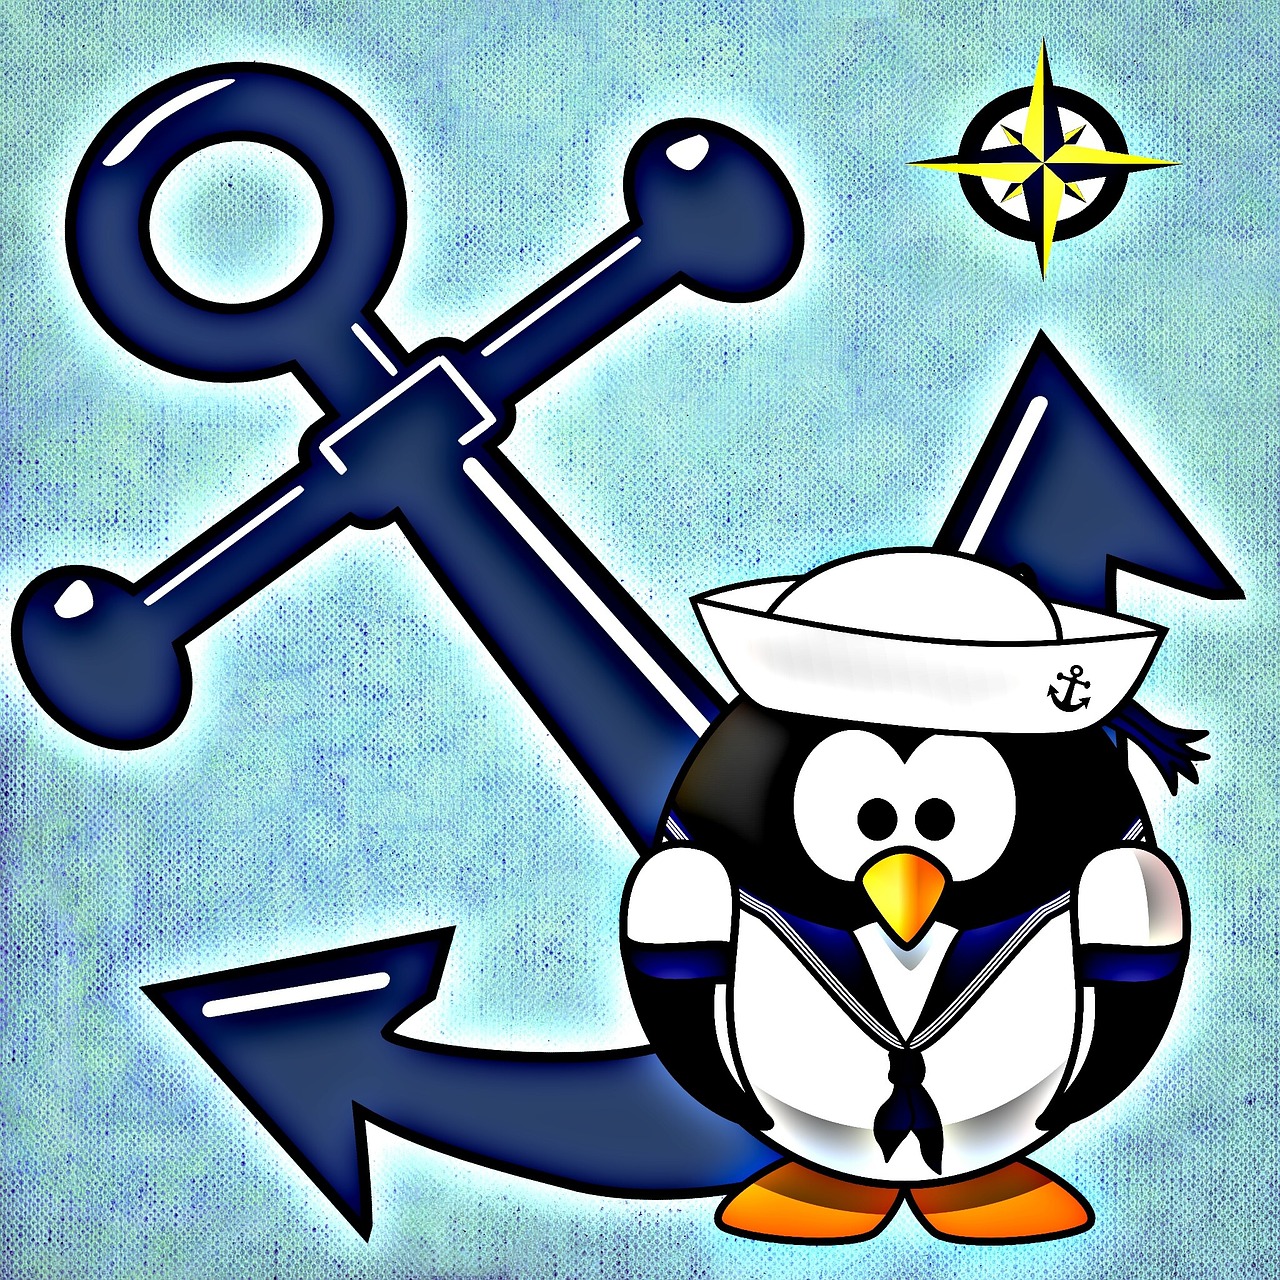 anchor sailor maritime free photo